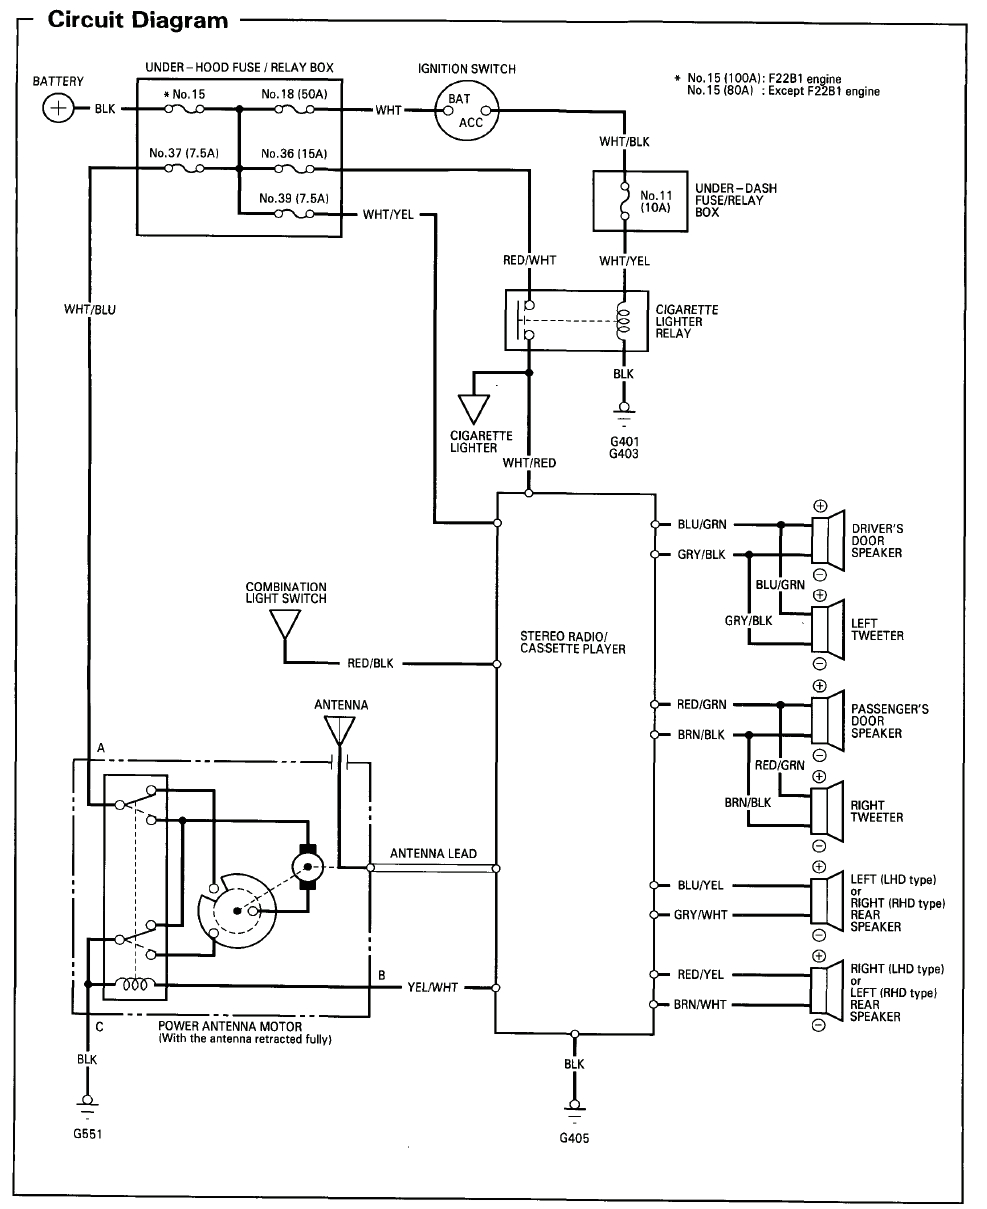 96 honda civic radio wiring diagram for 80 screenshot 2015 05 25 inside png